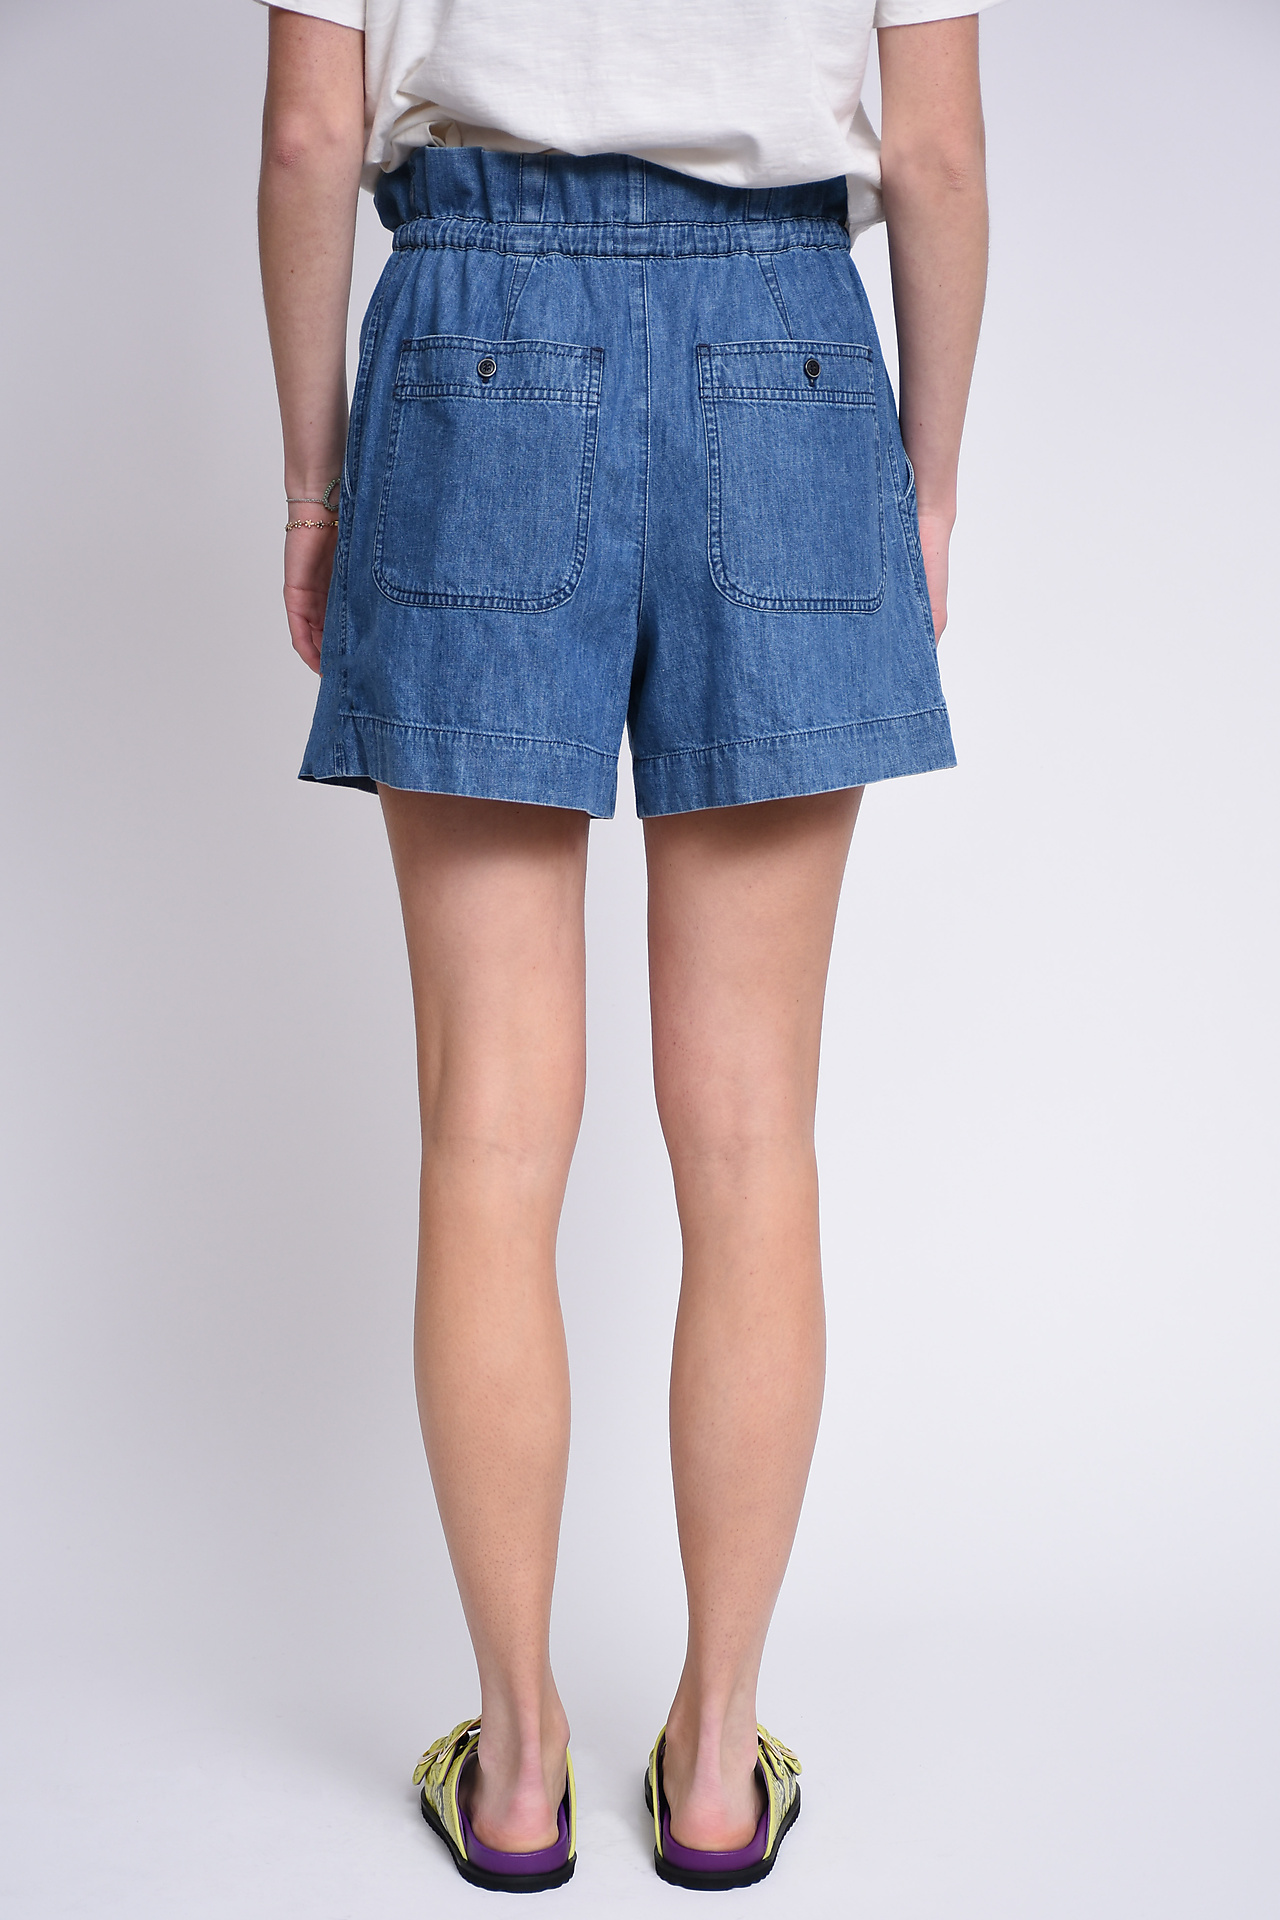 Marant Etoile Shorts Blue